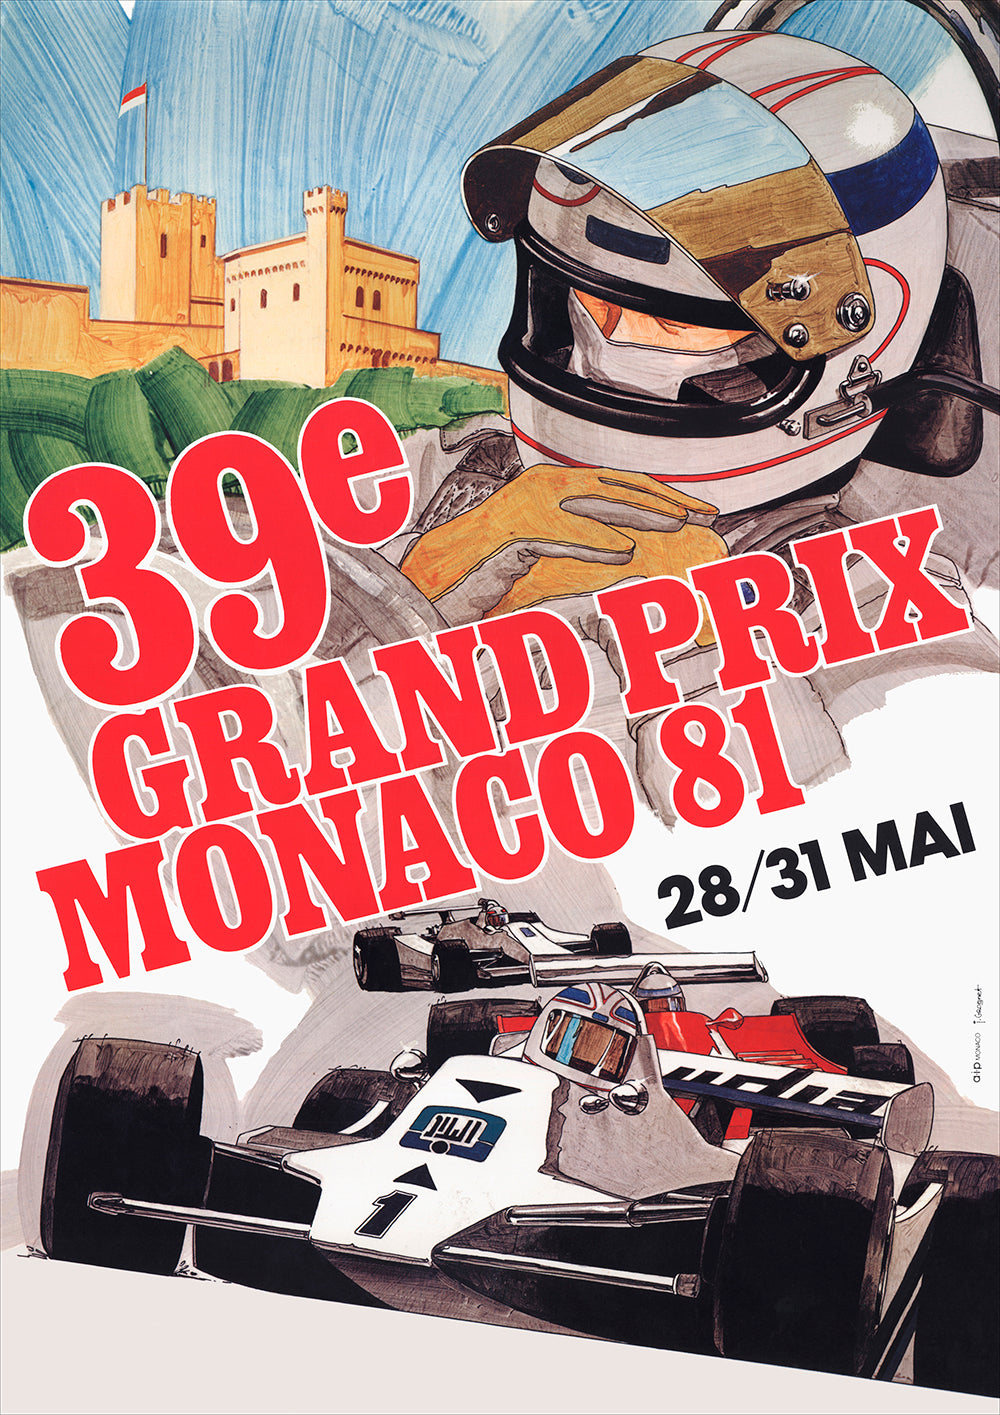 1981 Monaco Grand Prix Posters